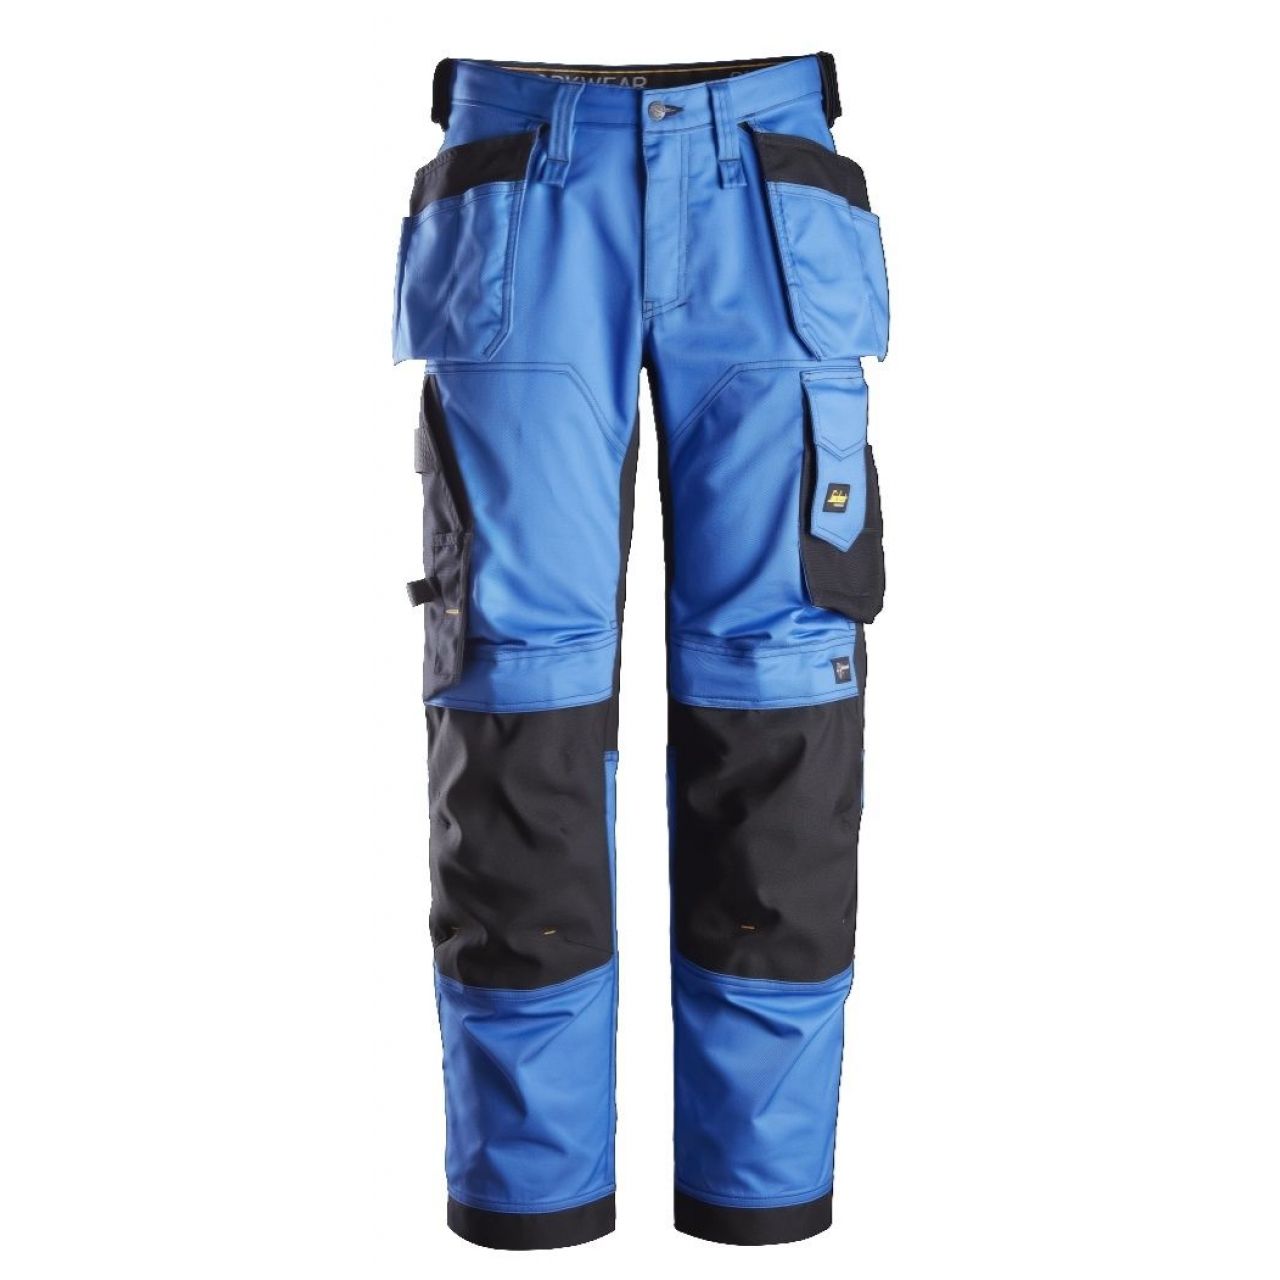 Pantalon elastico ajuste holgado AllroundWork bolsillos flotantes azul-negro talla 116